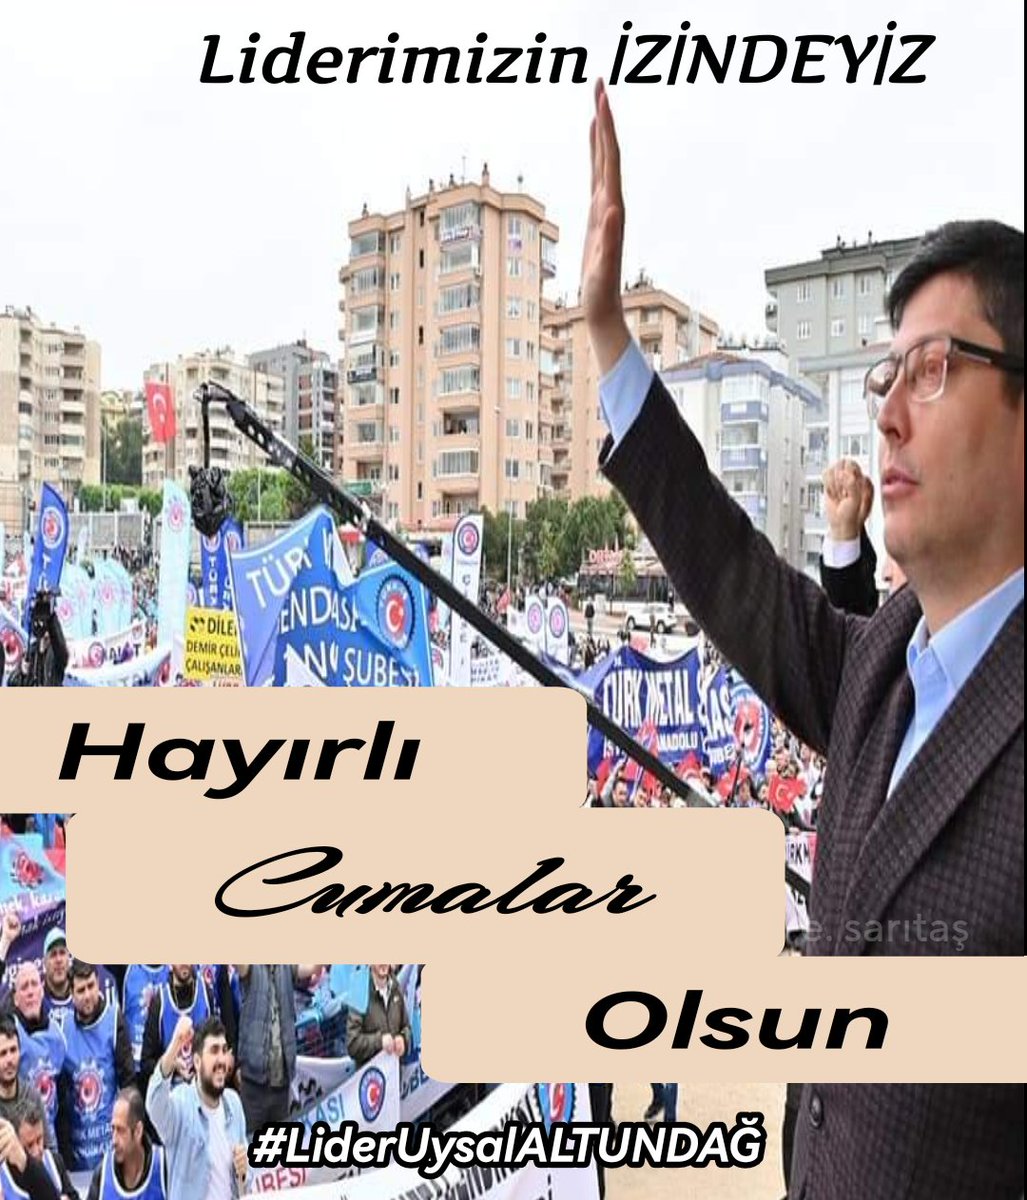 Birlik Beraberliğimiz Daim Olsun!...
#Türkmetal
#LiderUysalALTUNDAĞ
#TamYolİleri
#HepimizBiriz